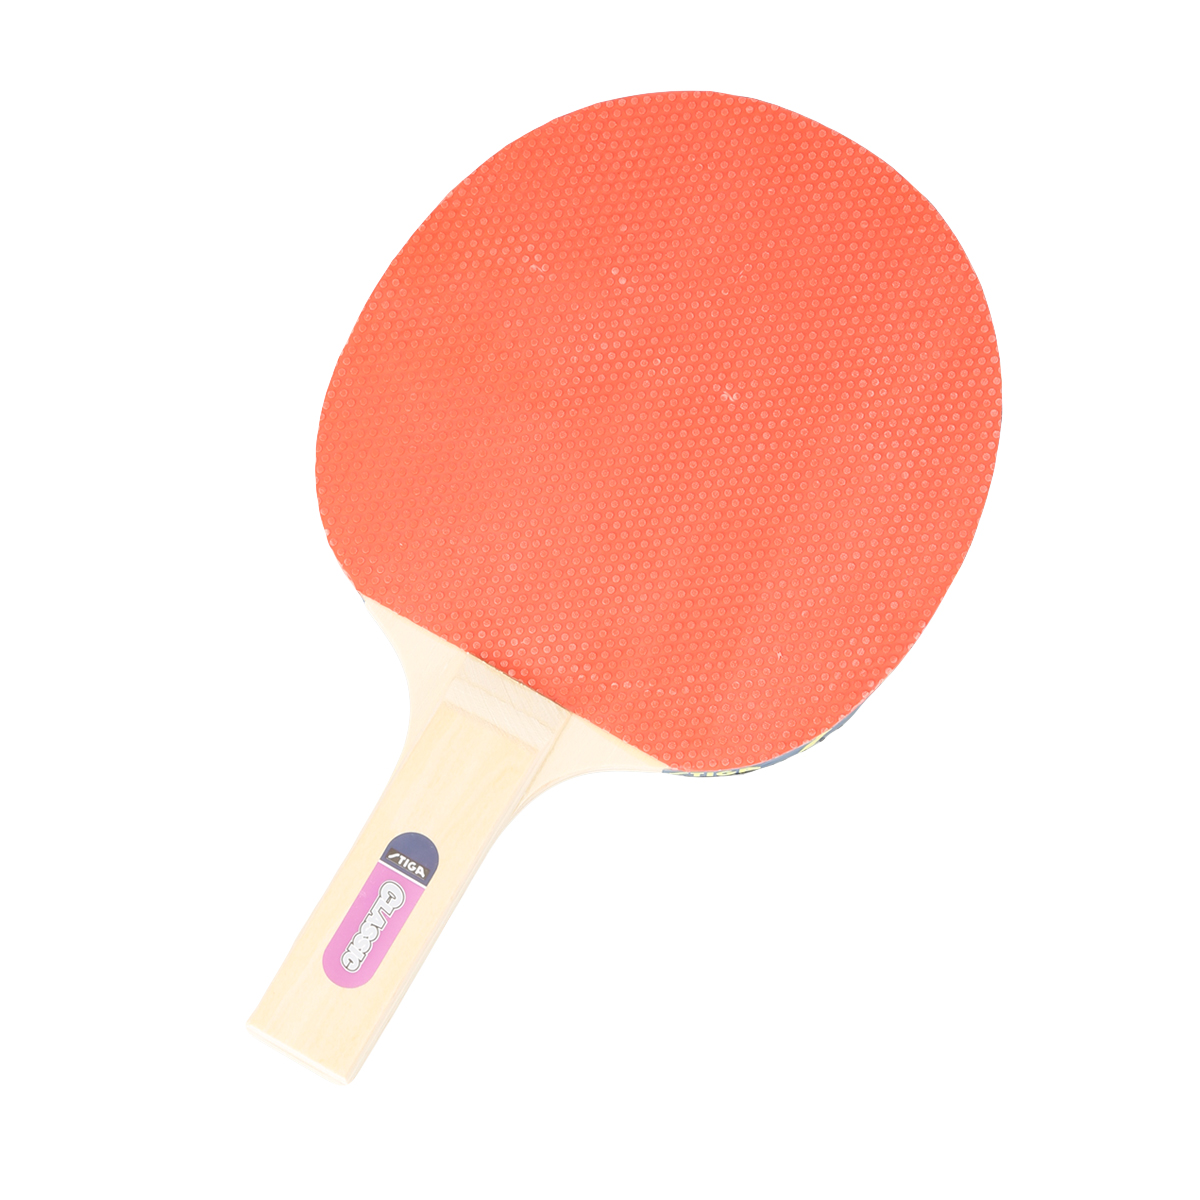 Paleta de Ping-Pong Stiga Classic,  image number null